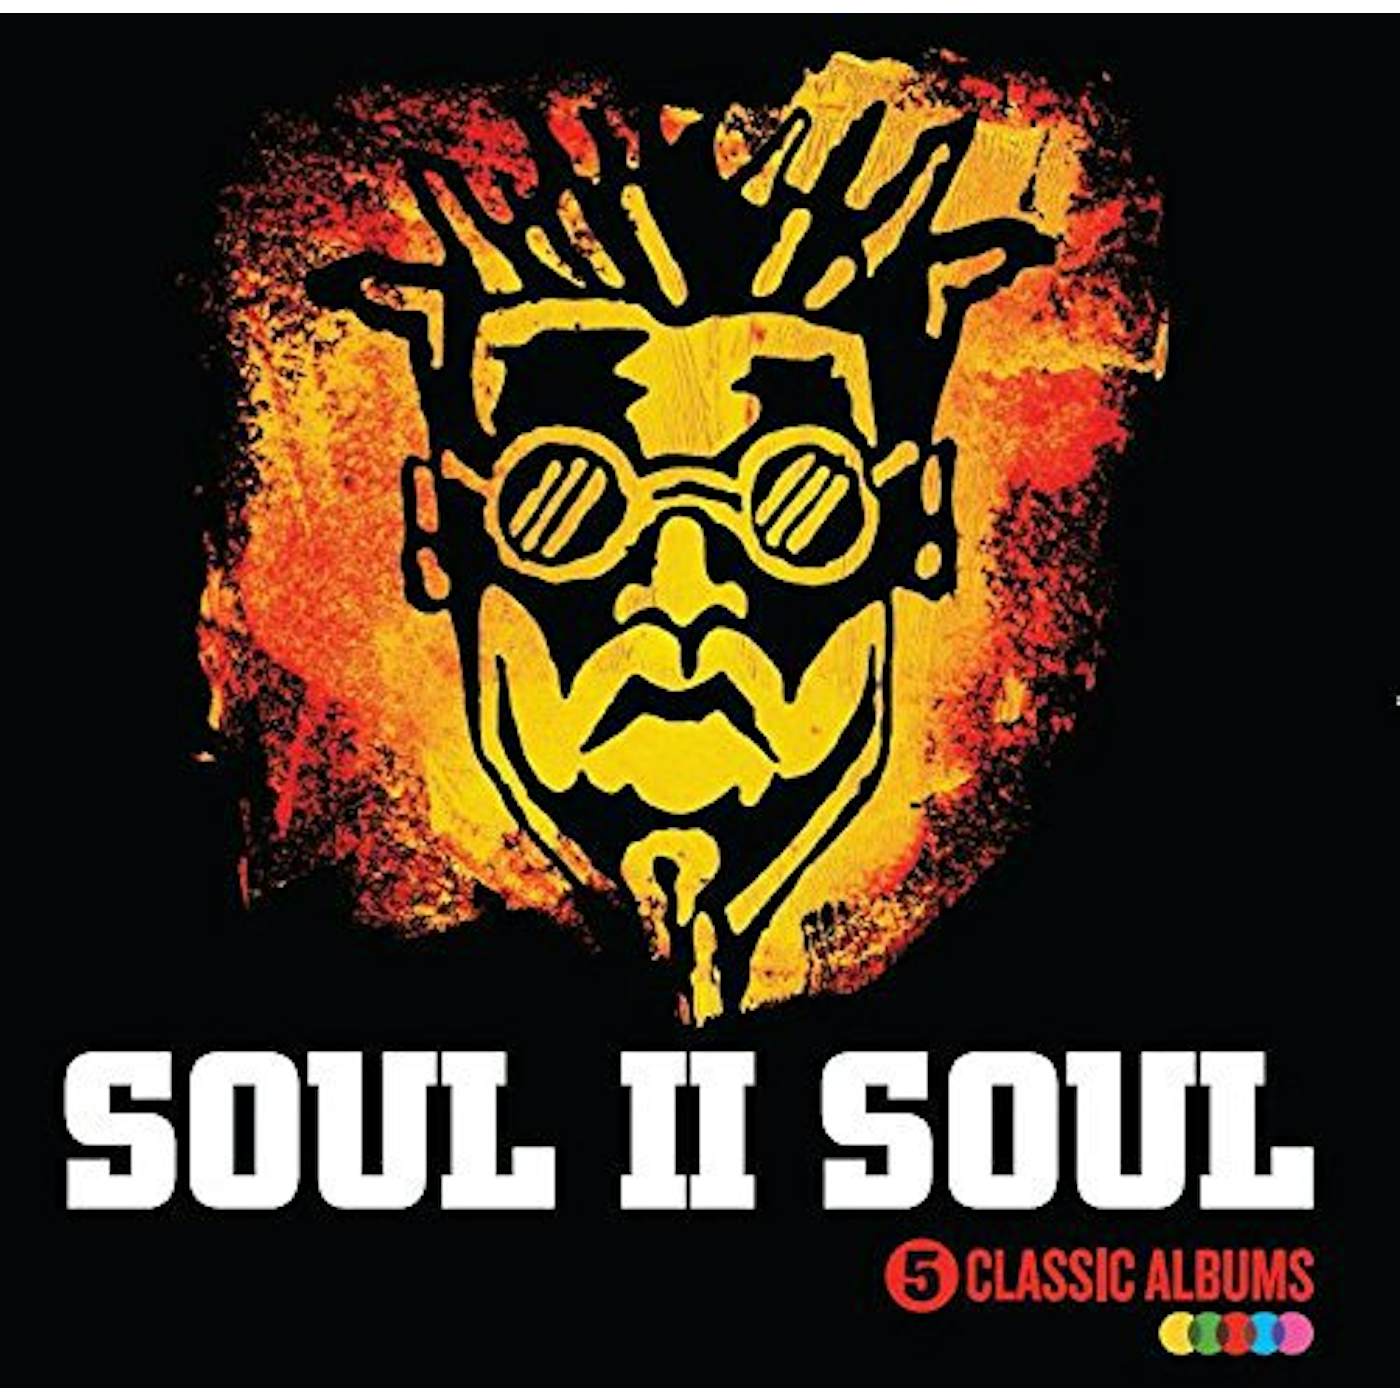 Soul II Soul 5 CLASSIC ALBUMS CD